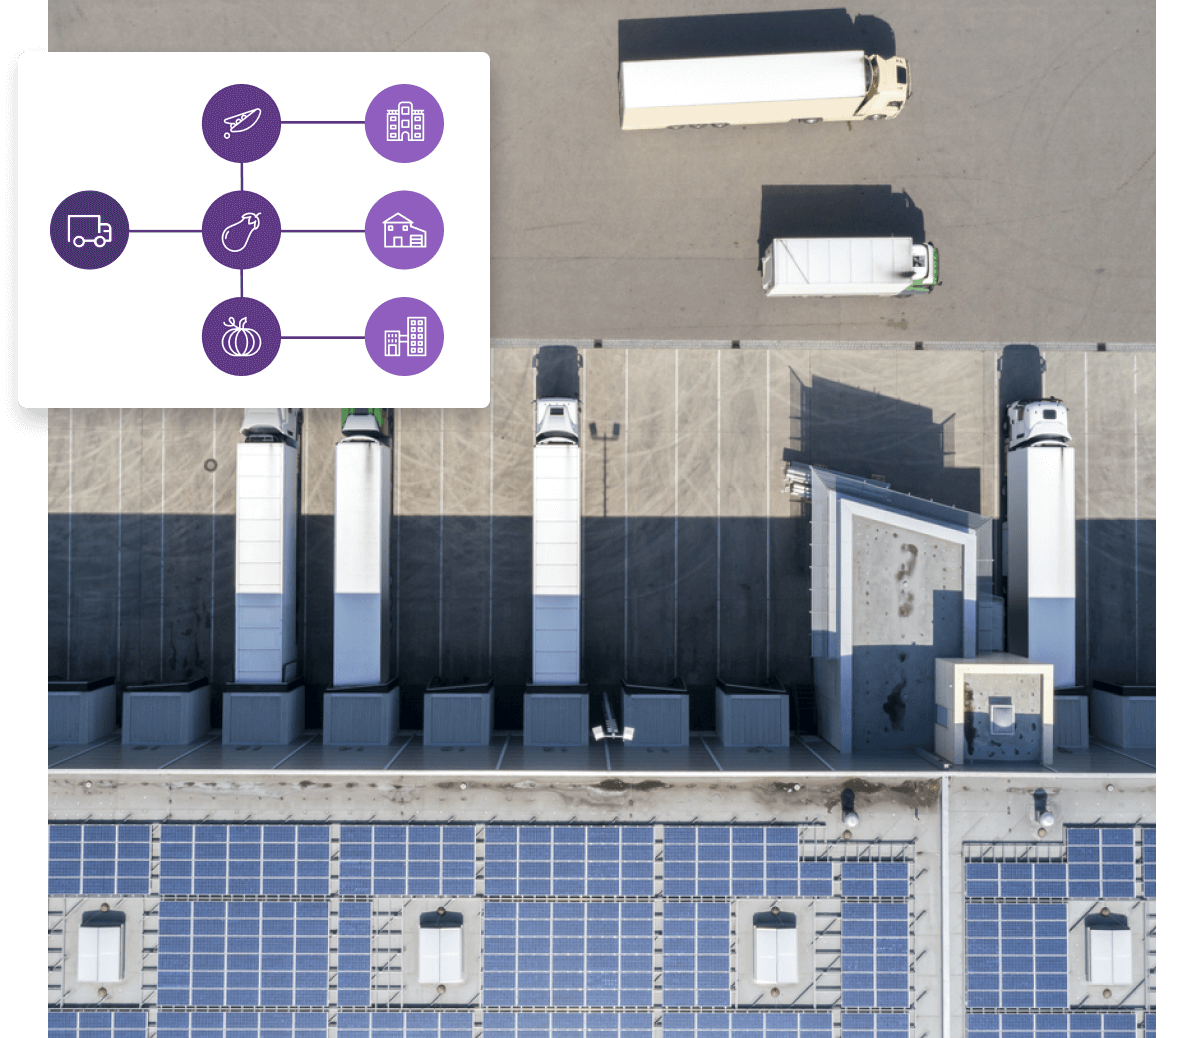 Une vue aérienne d’une ferme solaire avec des camions et des panneaux solaires.